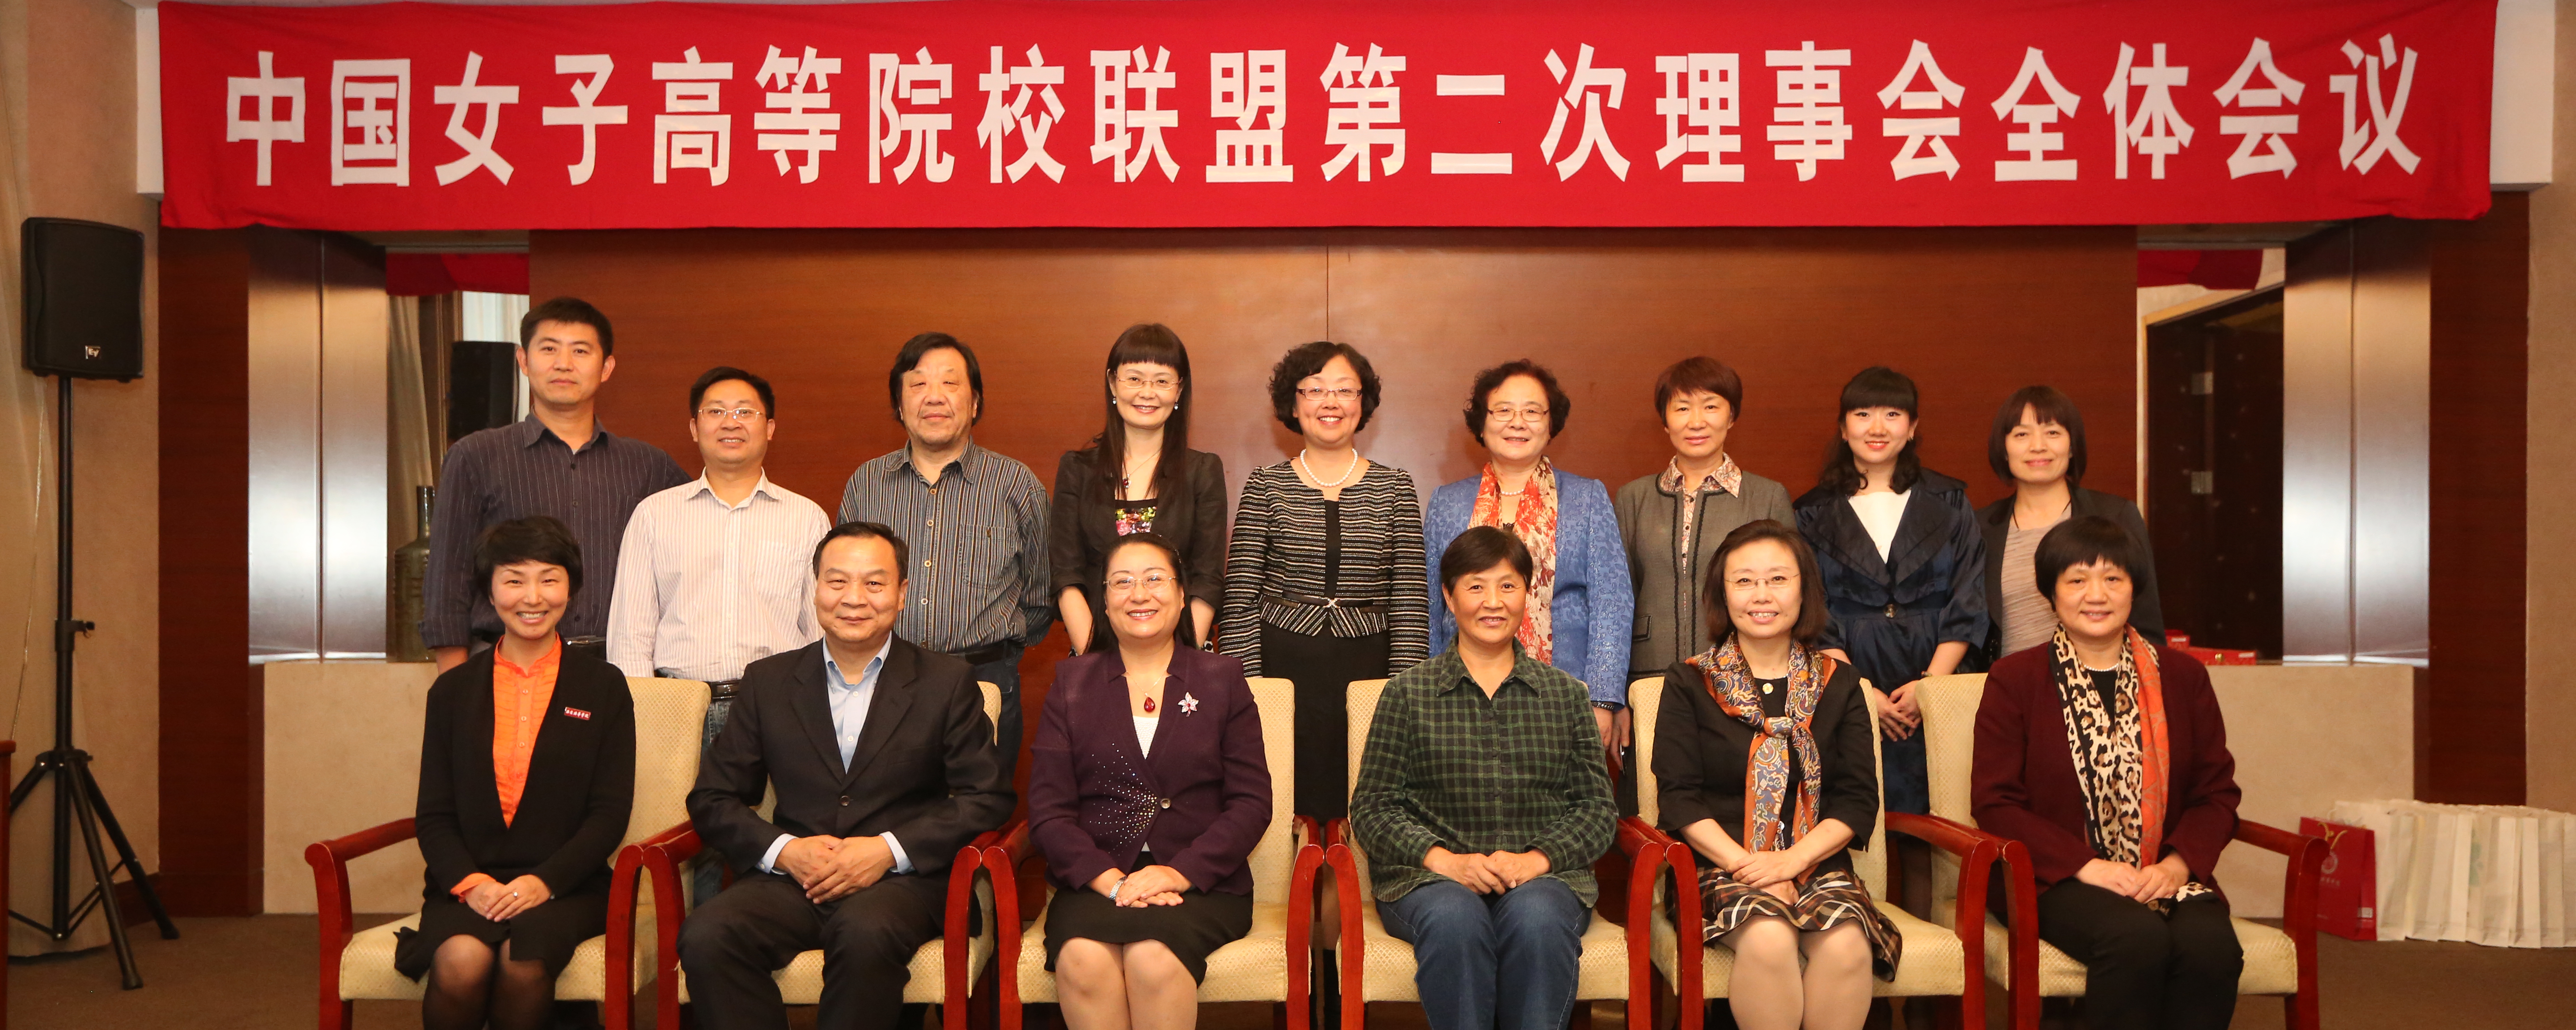 2nd Plenary Meeting of Board of Directors of CWUC Convenes in Beijing